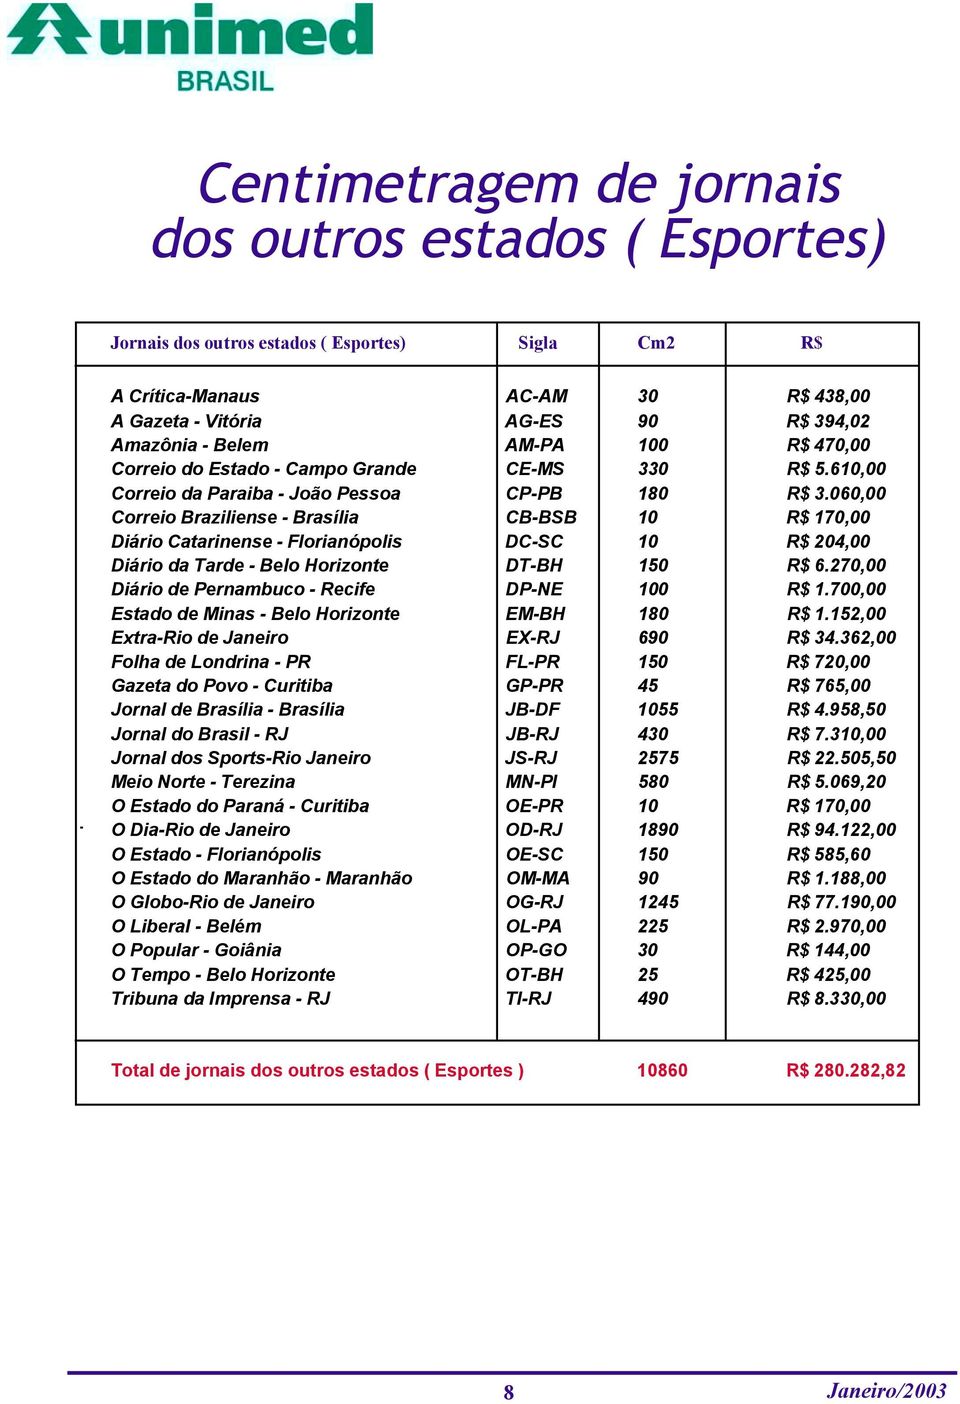 060,00 Correio Braziliense - Brasília CB-BSB 10 R$ 170,00 Diário Catarinense - Florianópolis DC-SC 10 R$ 204,00 Diário da Tarde - Belo Horizonte DT-BH 150 R$ 6.